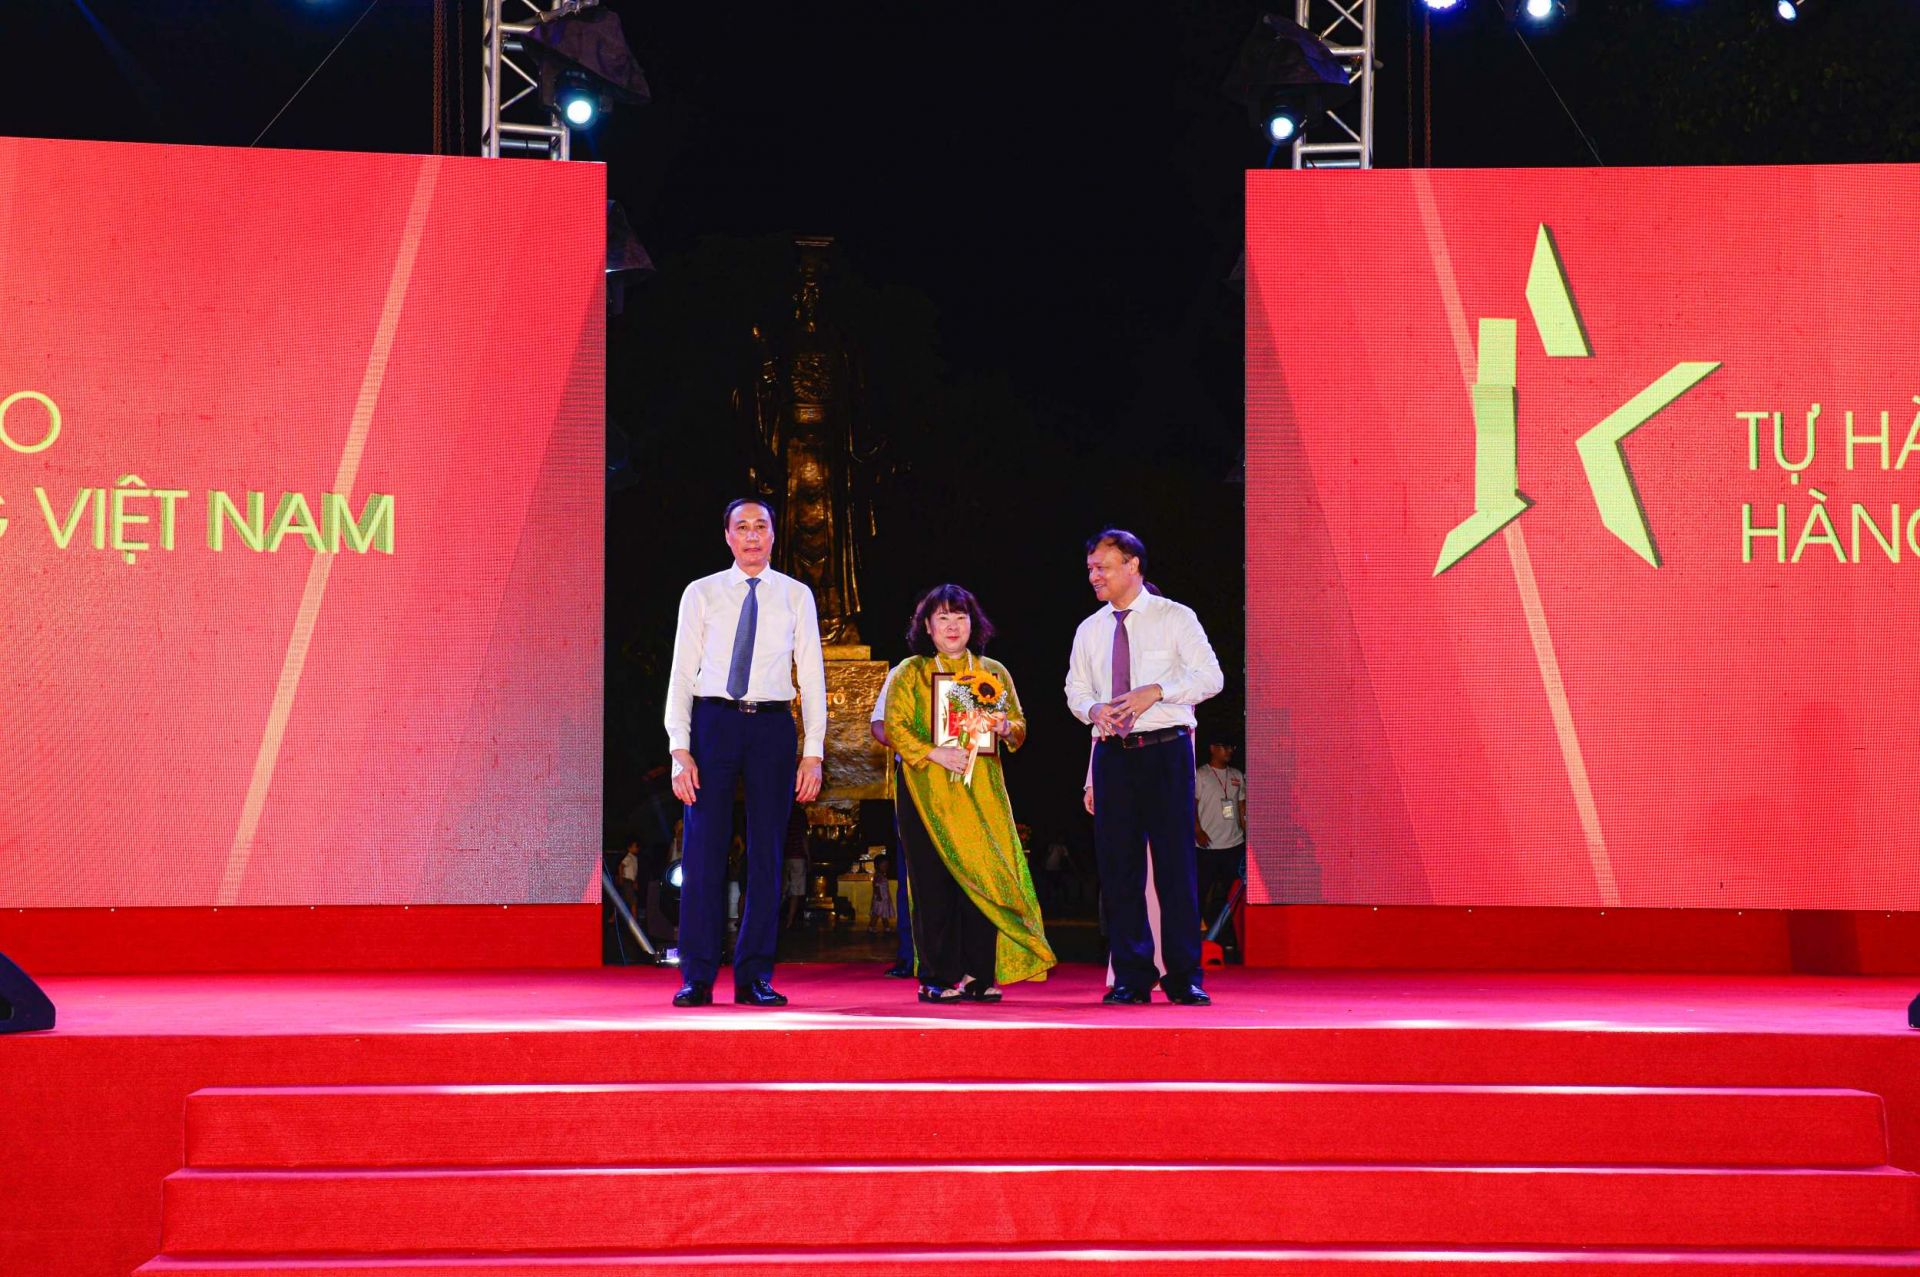 Phó Chủ tịch Ủy ban Trung ương Mặt trận Tổ quốc Việt Nam Phùng Khánh Tài (trái) và Thứ trưởng Bộ Công Thương Đỗ Thắng Hải (phải) trao kỷ niệm chương cho đại diện Tạp chí Công Thương, Bộ Công Thương